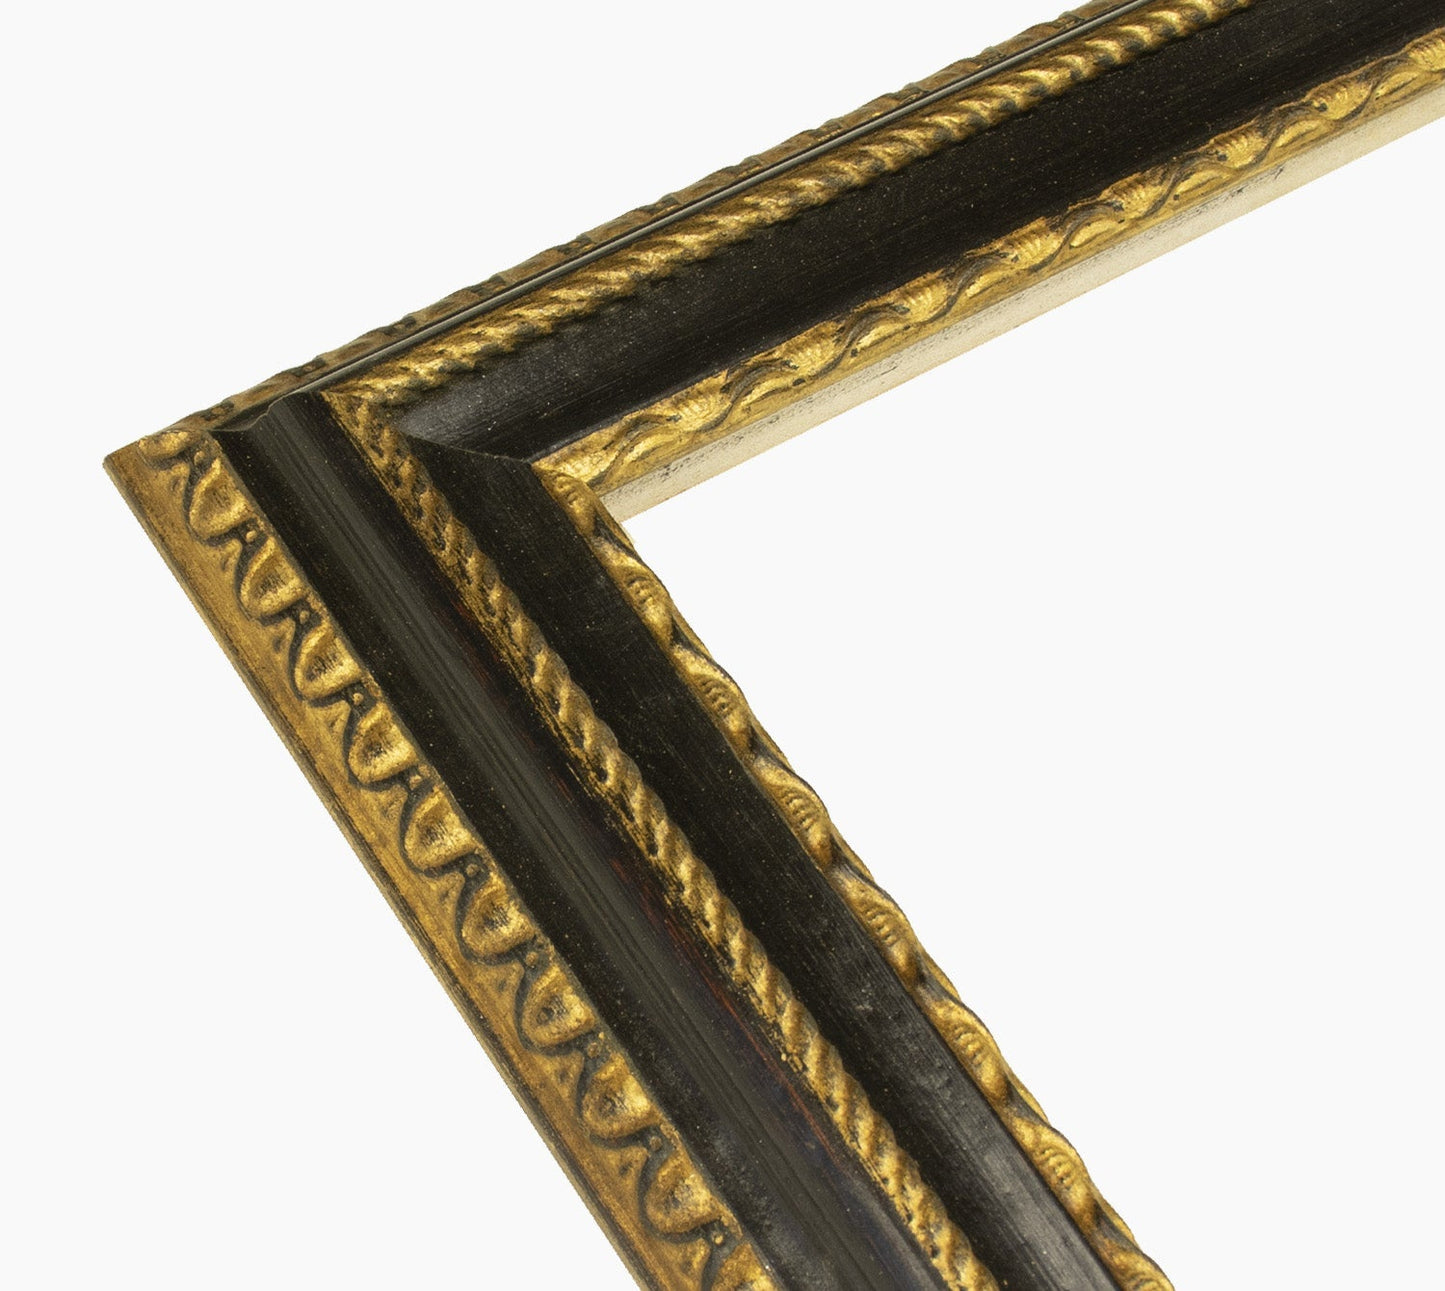 410.601 cadre en bois noire à cire avec fil d'or mesure de profil 60x40 mm Lombarda cornici S.n.c.